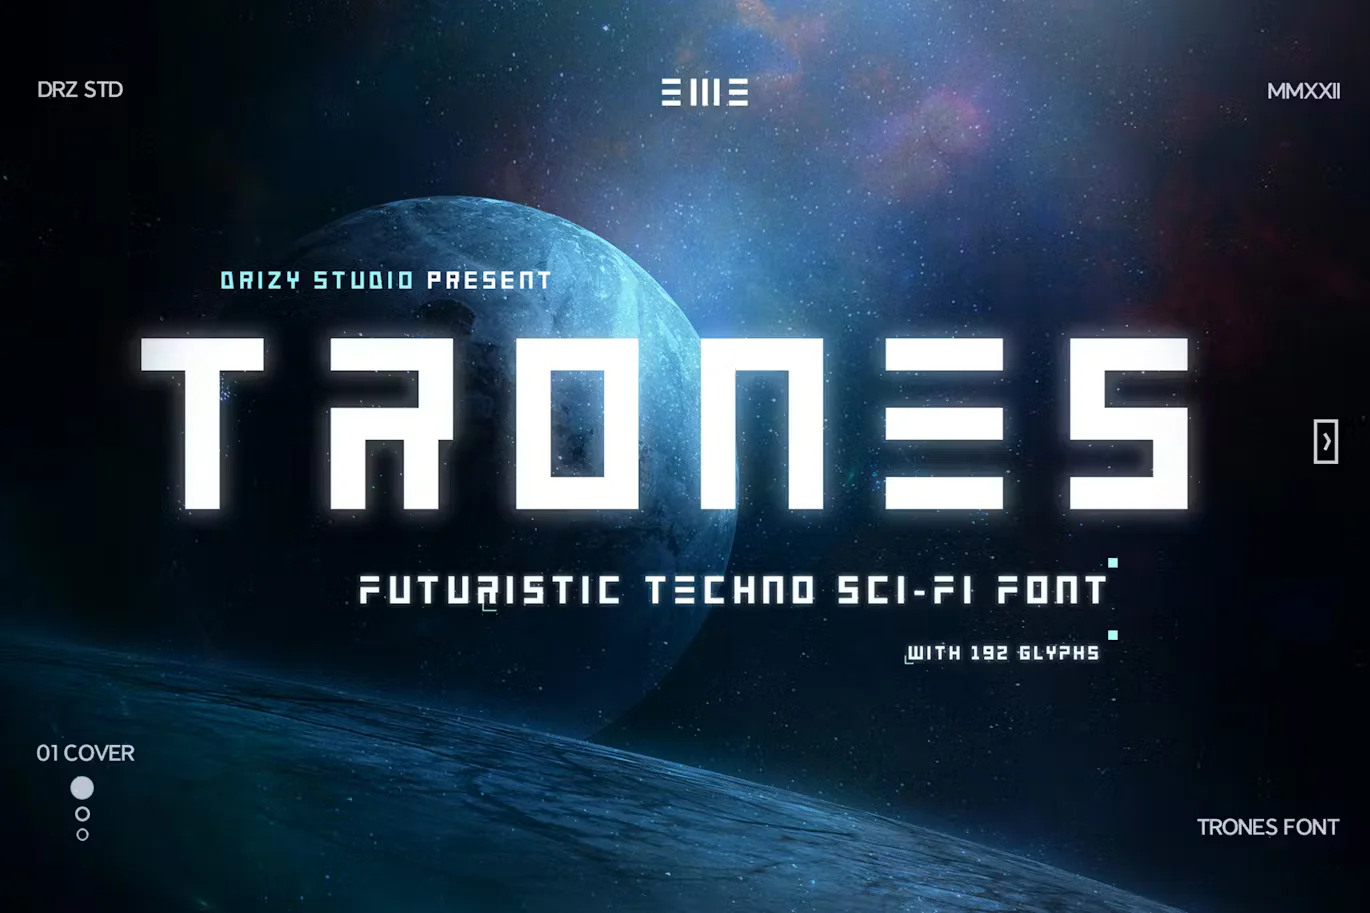 Trones - Techno Sci-Fi Font